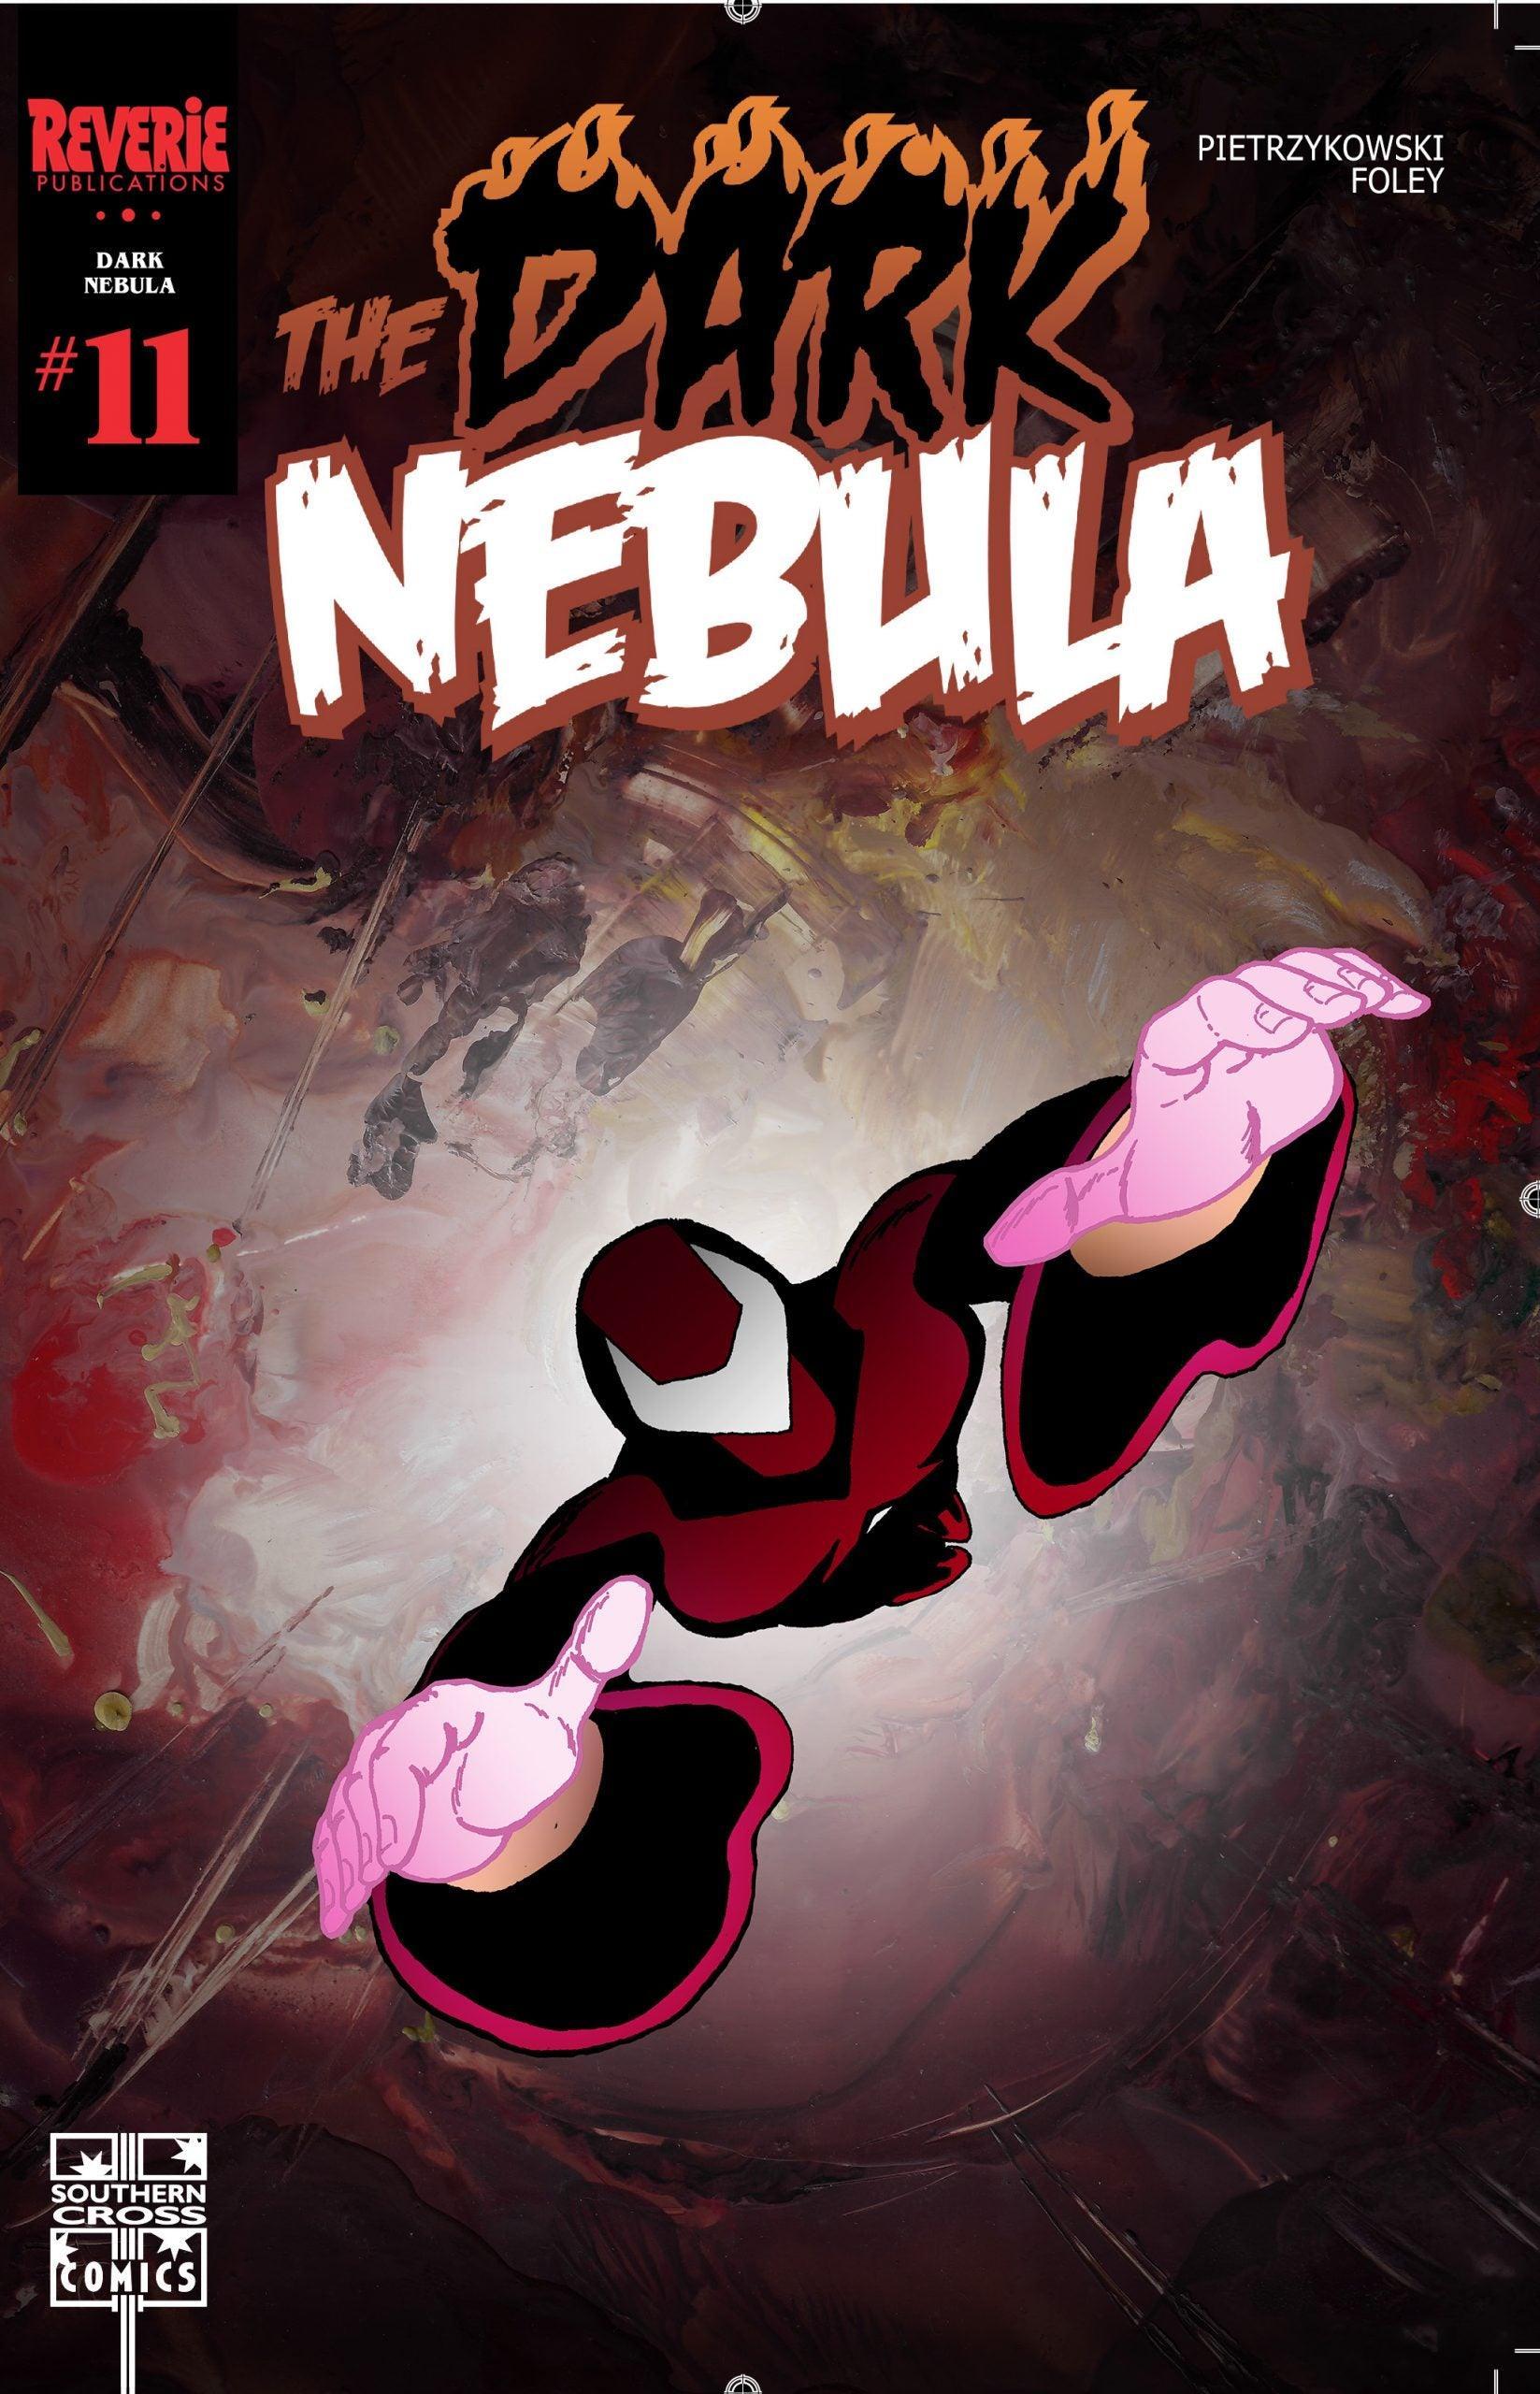 DARK NEBULA #11 (COVER C) SIGNED BY TAD PIETRZYKOWSKI - Kings Comics